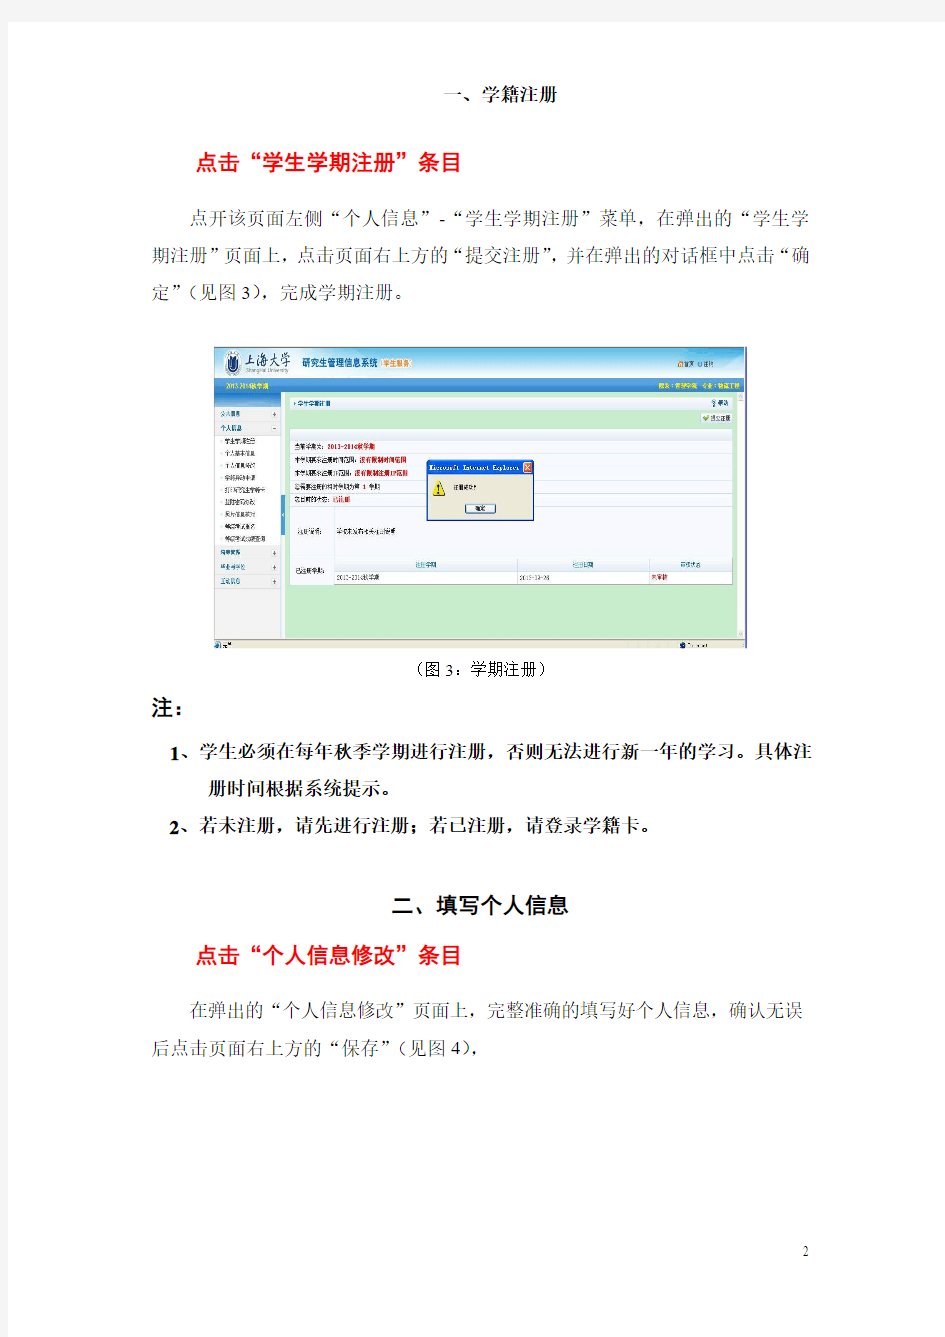 上海大学研究生信息管理系统登录说明